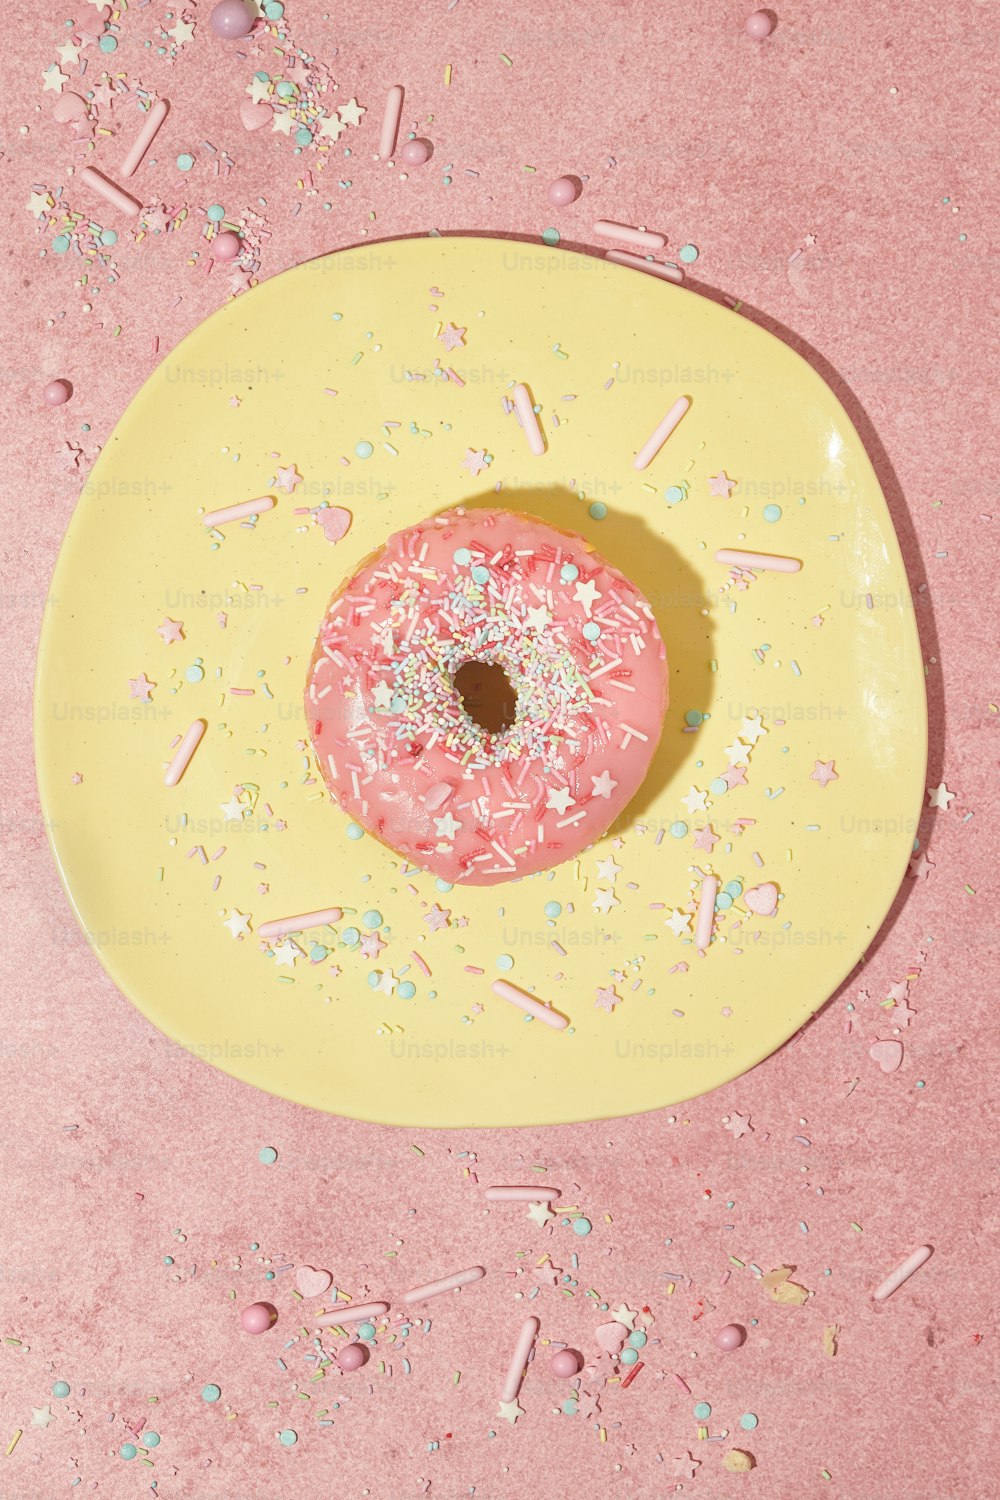 ein rosa Donut mit Streuseln auf einem gelben Teller